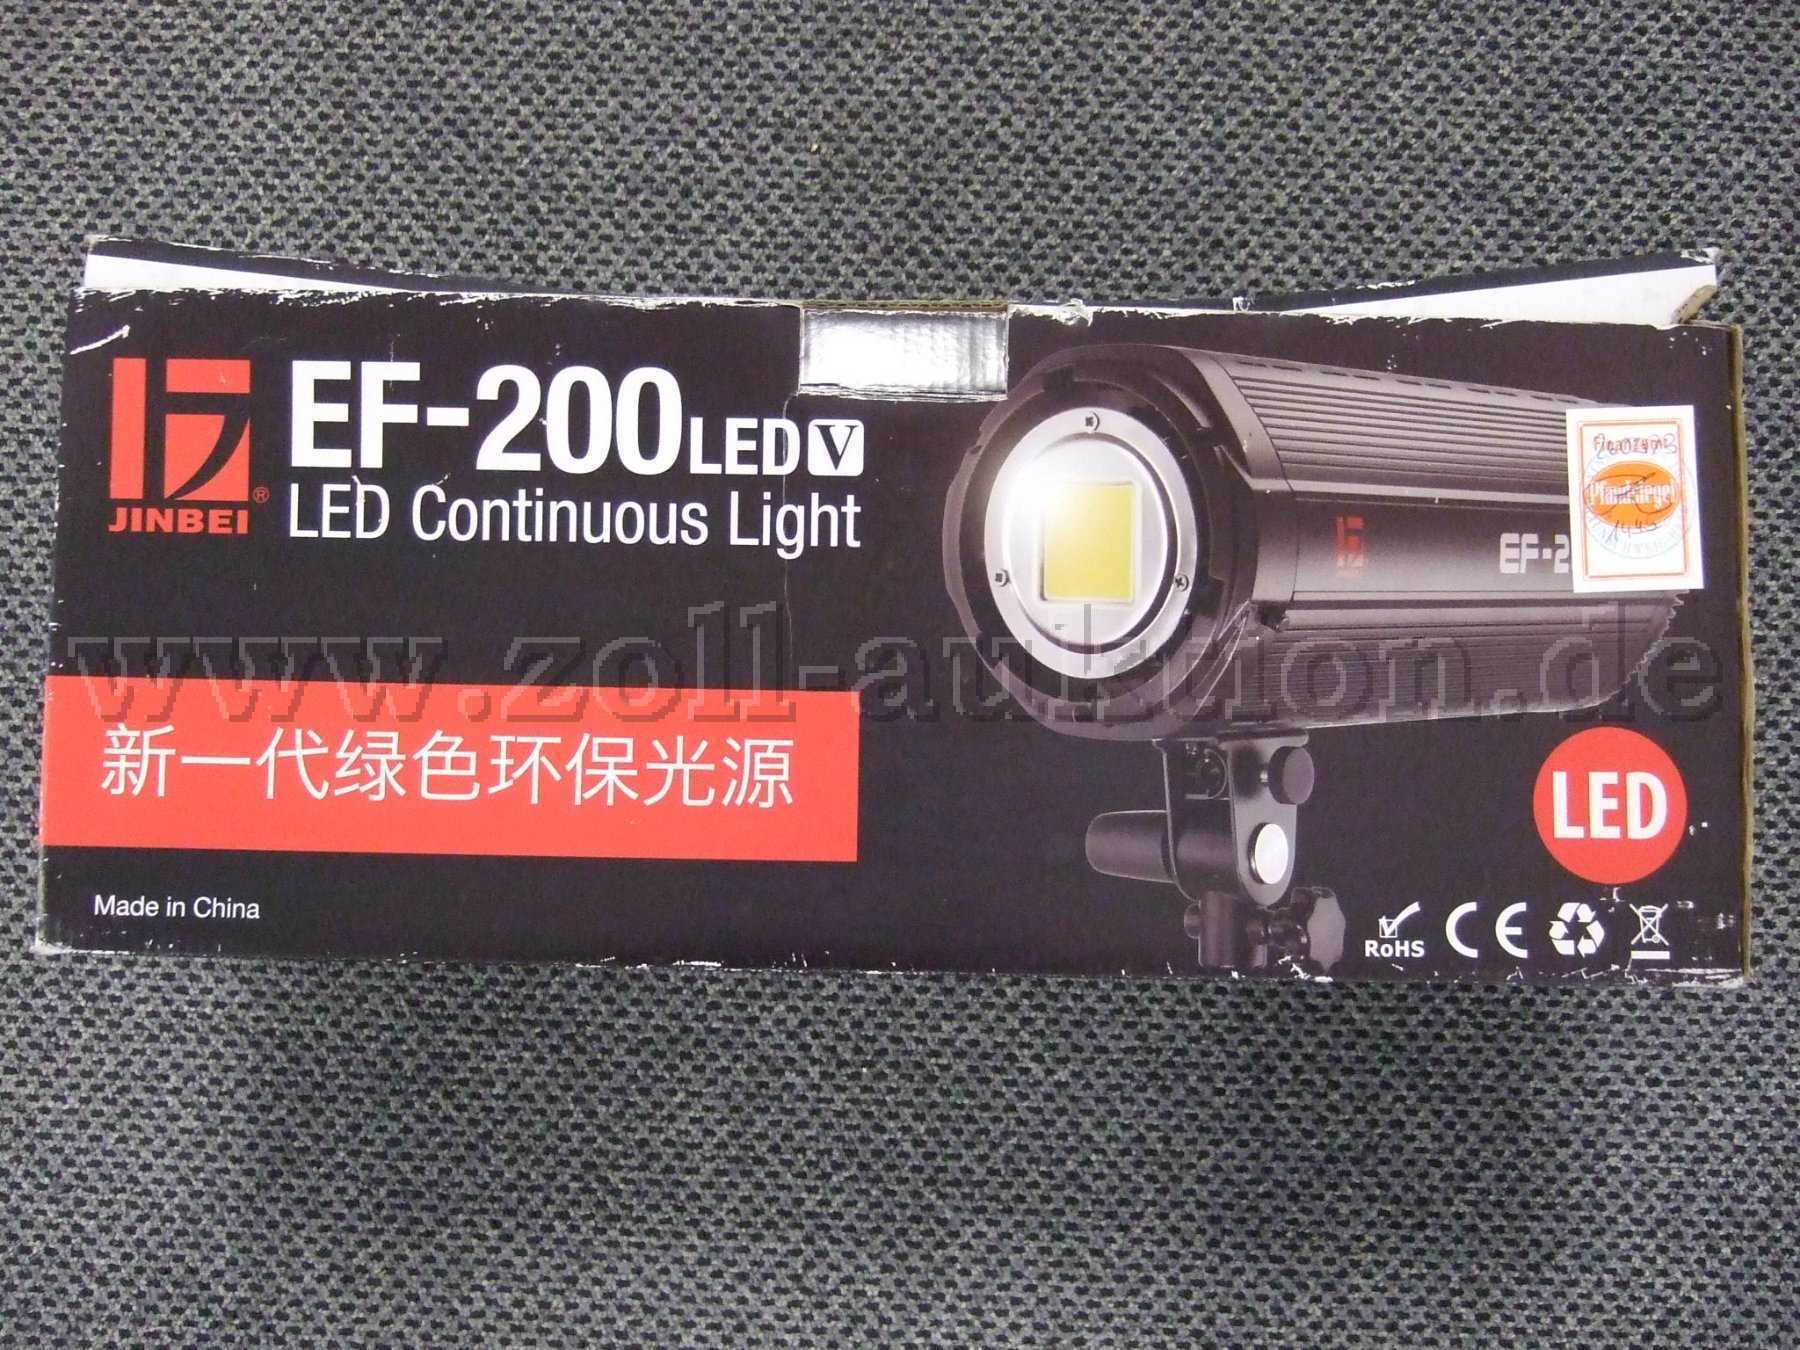 Jinbei EF-200 Verpackung